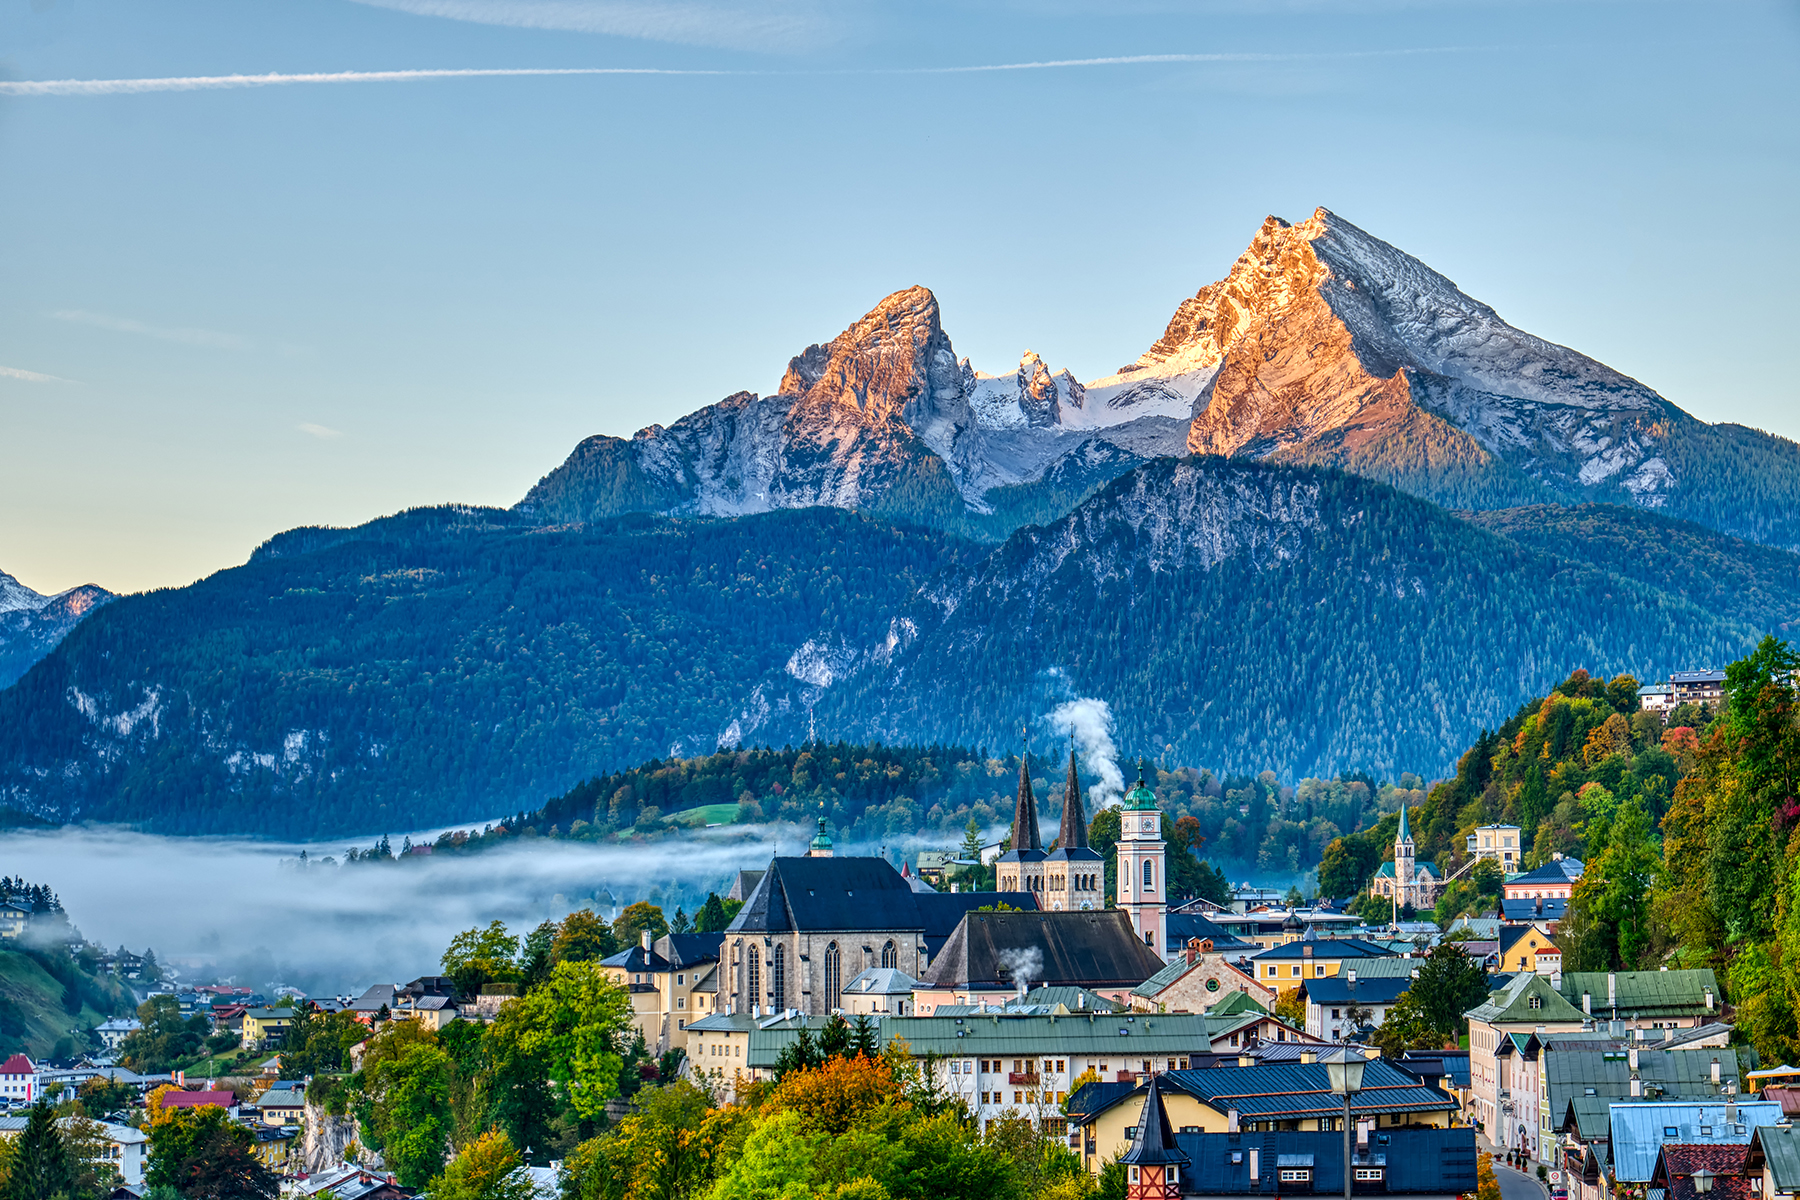 Berchtesgaden, Austria framed by mountains